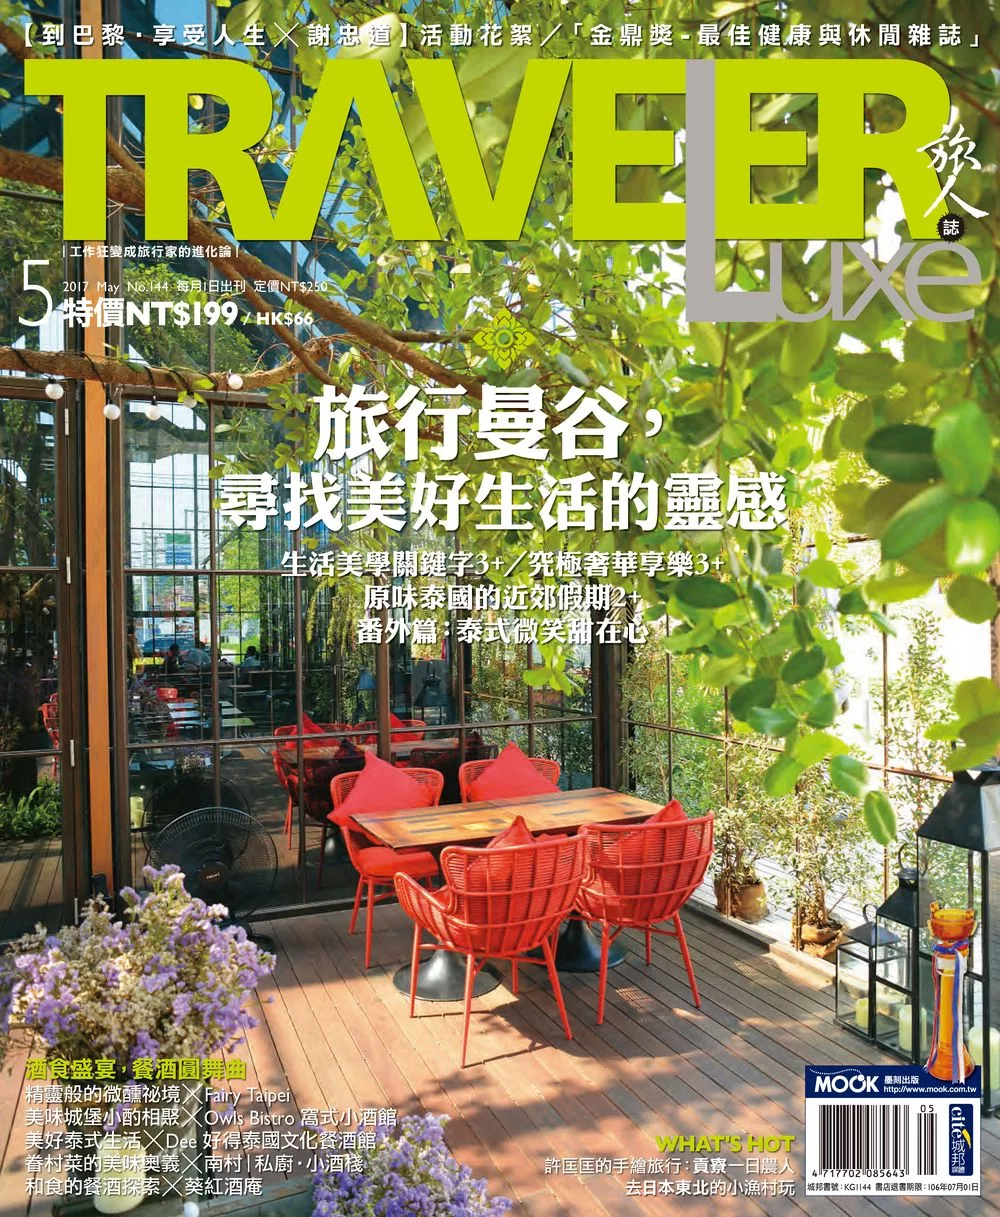 TRAVELER LUXE 旅人誌 05月號/2017第144期 (電子雜誌)